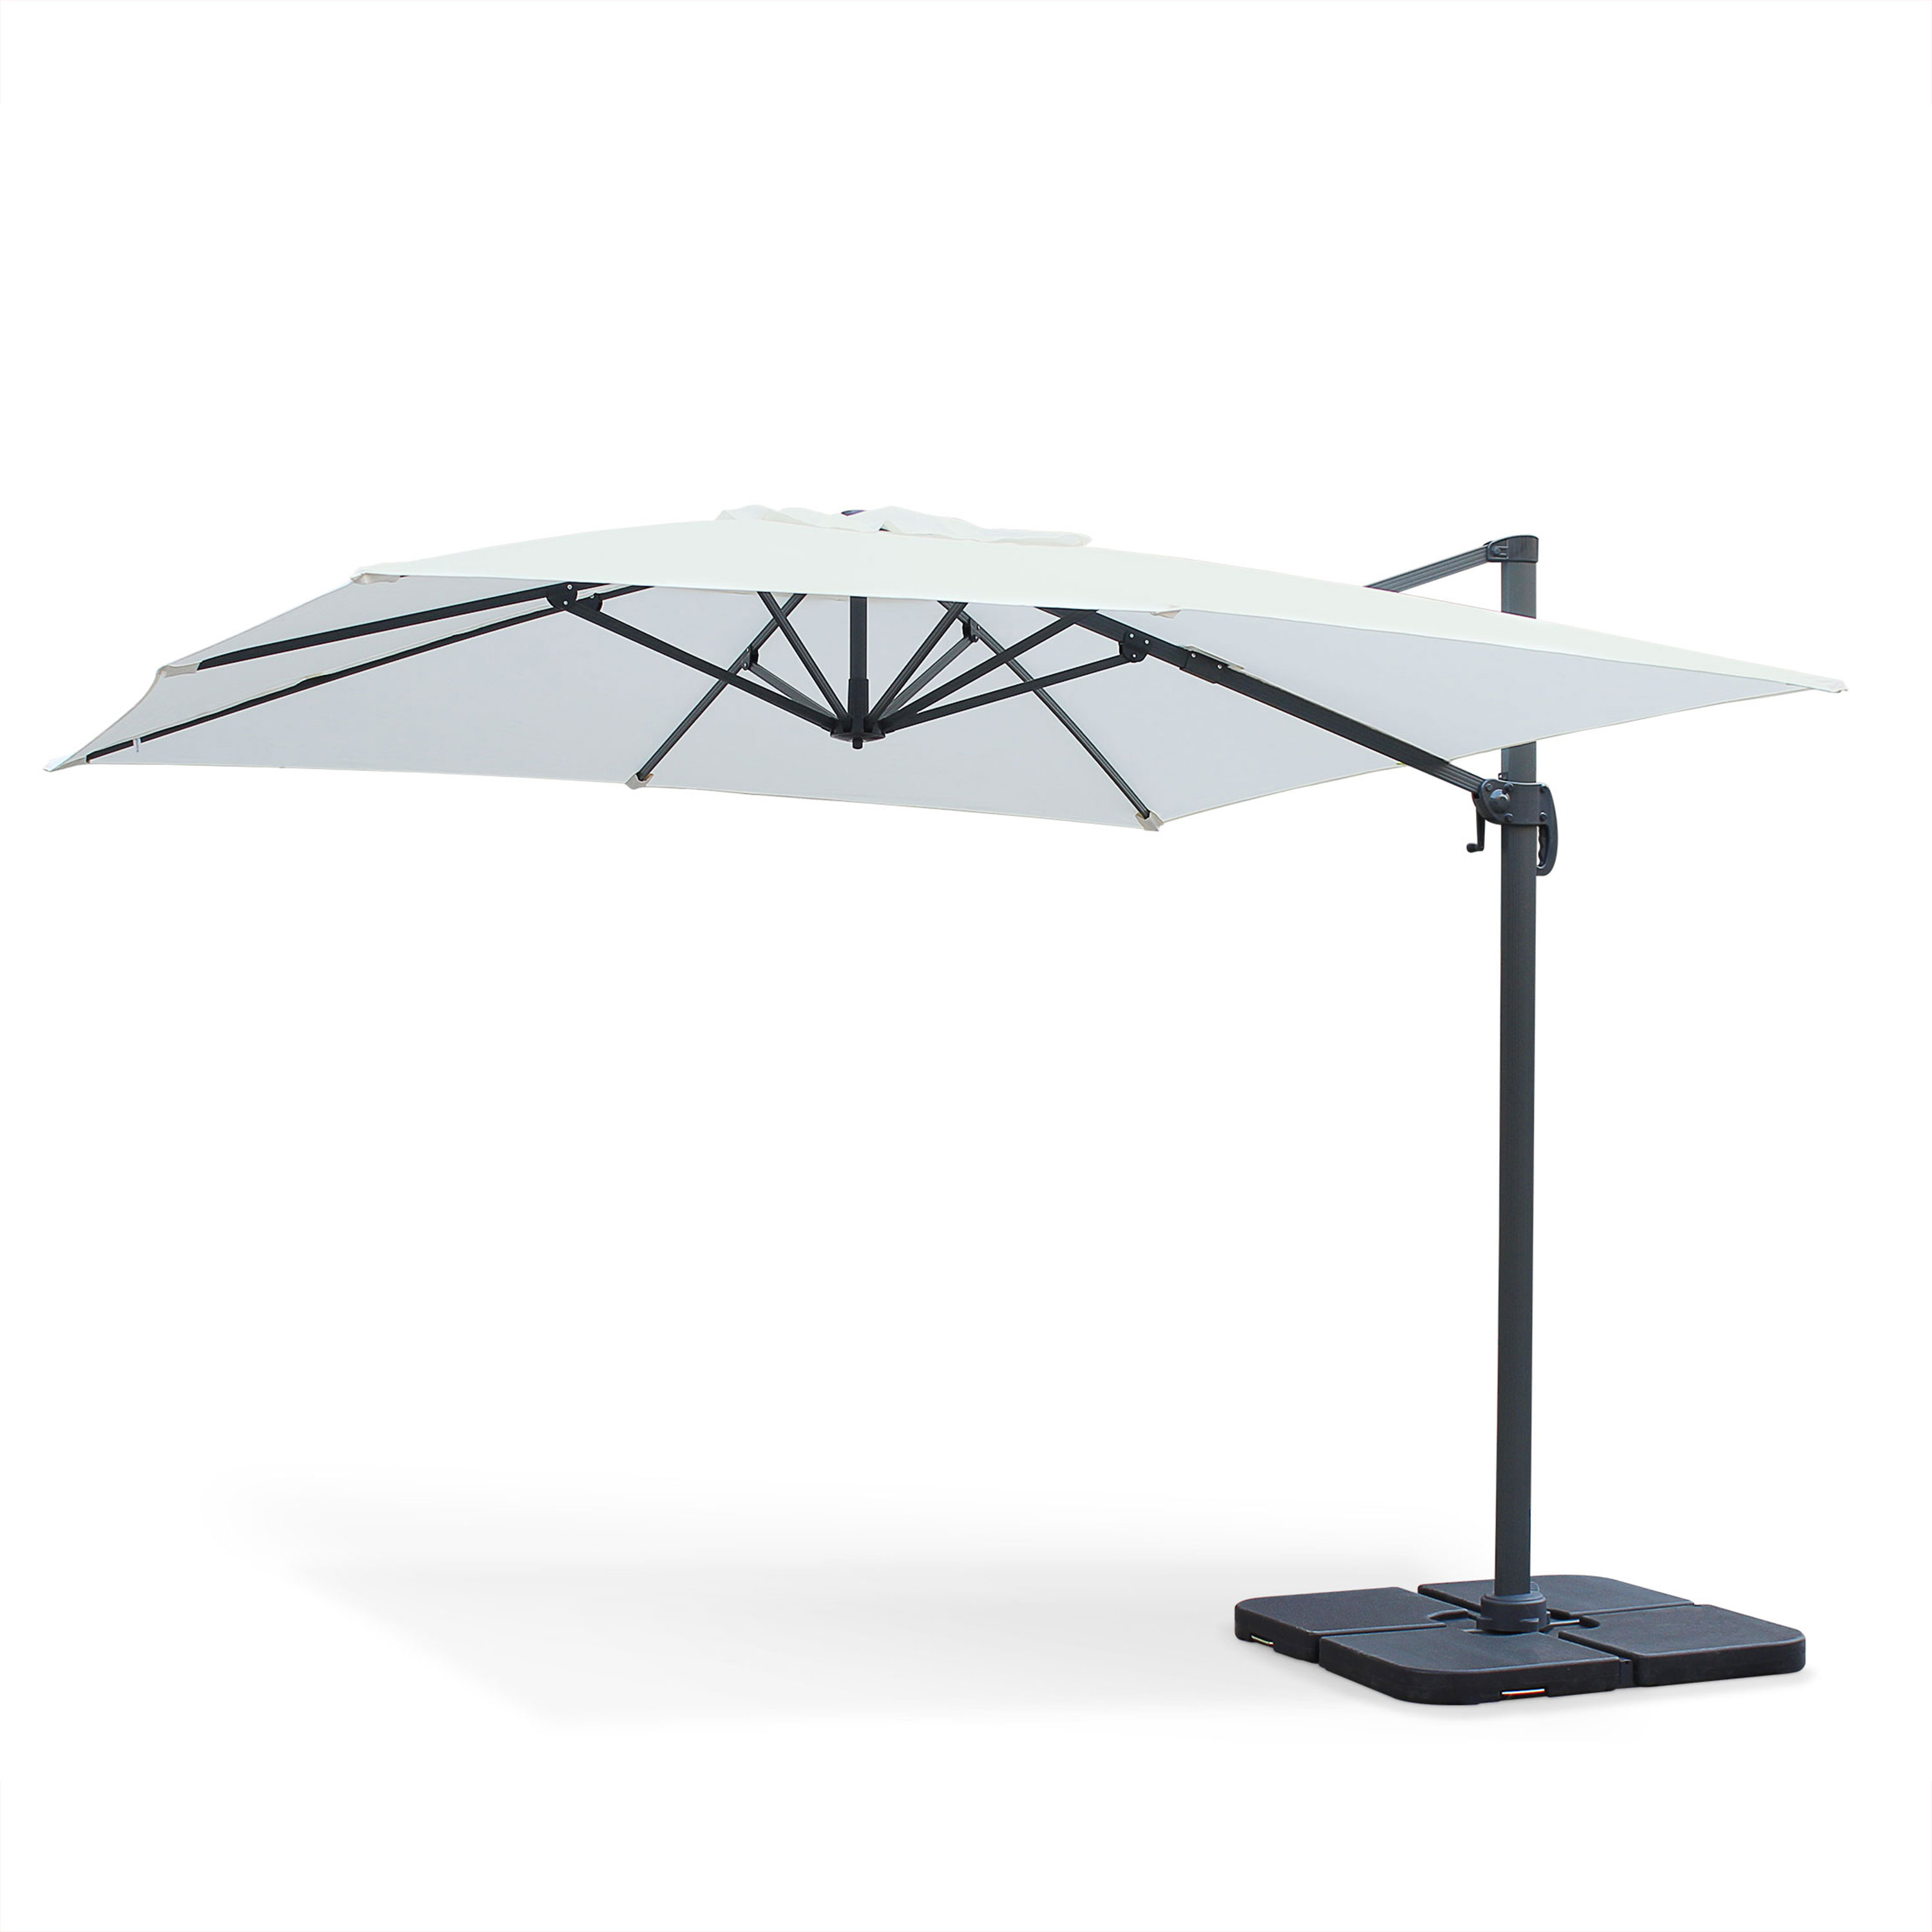 3x3m Aluminium Cantilever Outdoor Umbrella off-white FALGOS